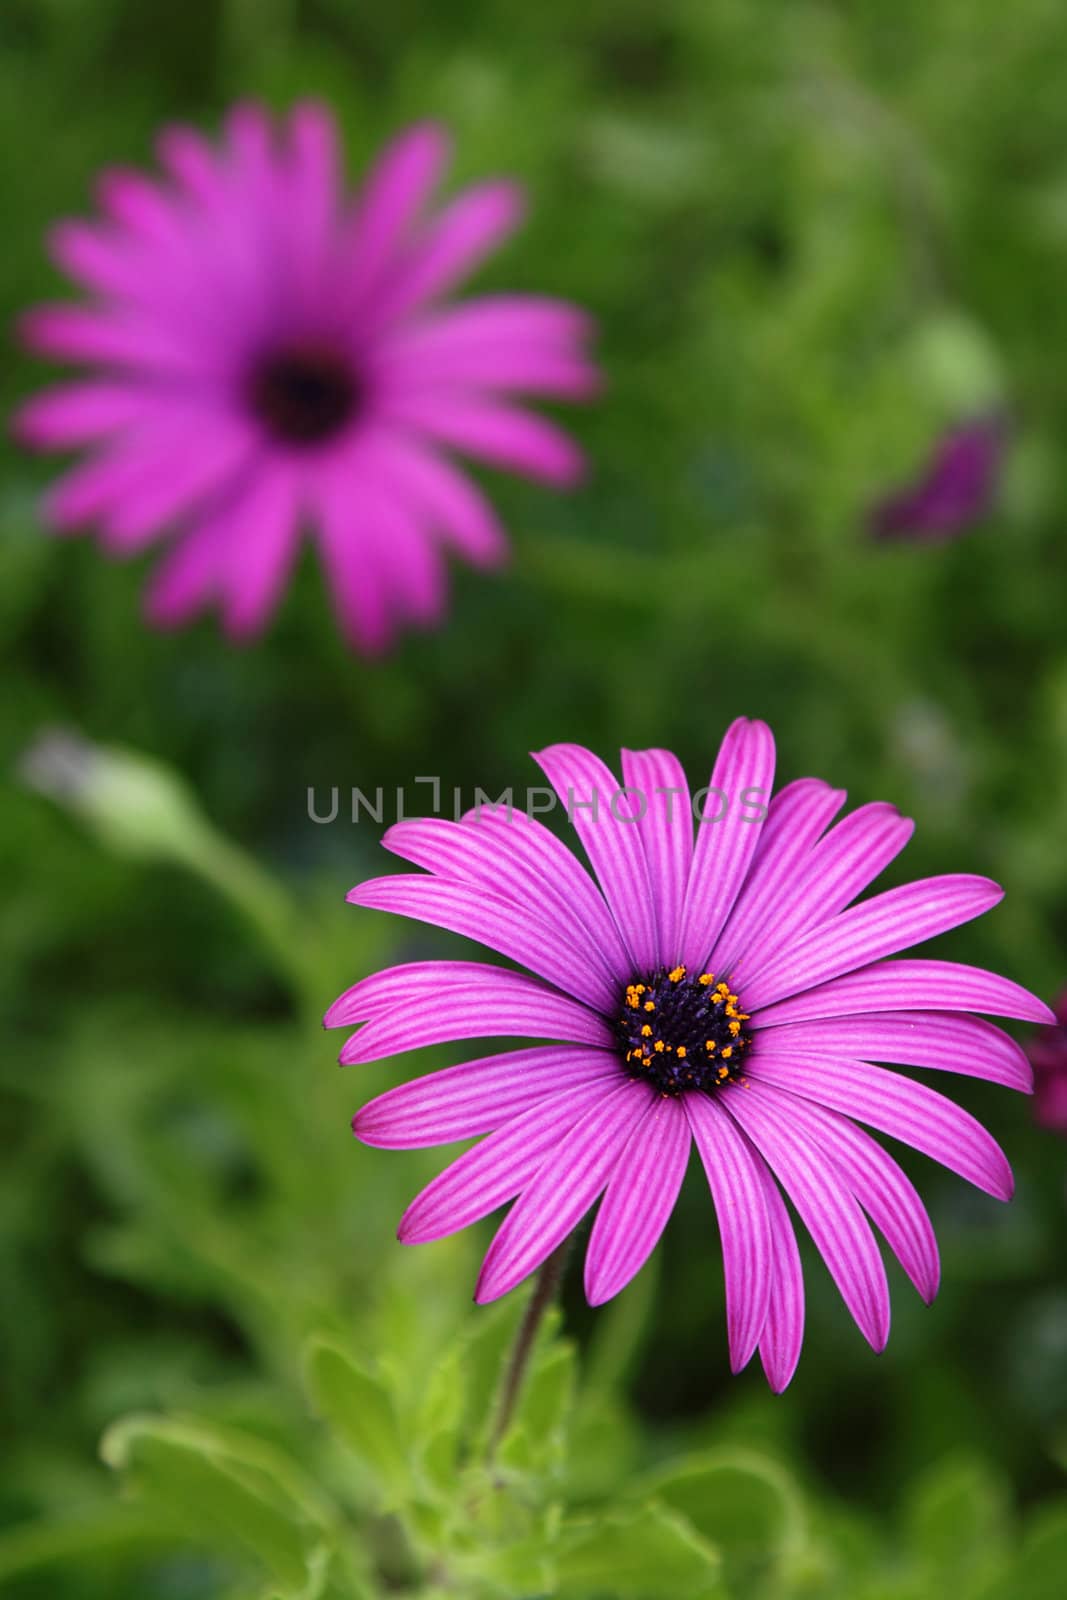 Purple daisy by pulen